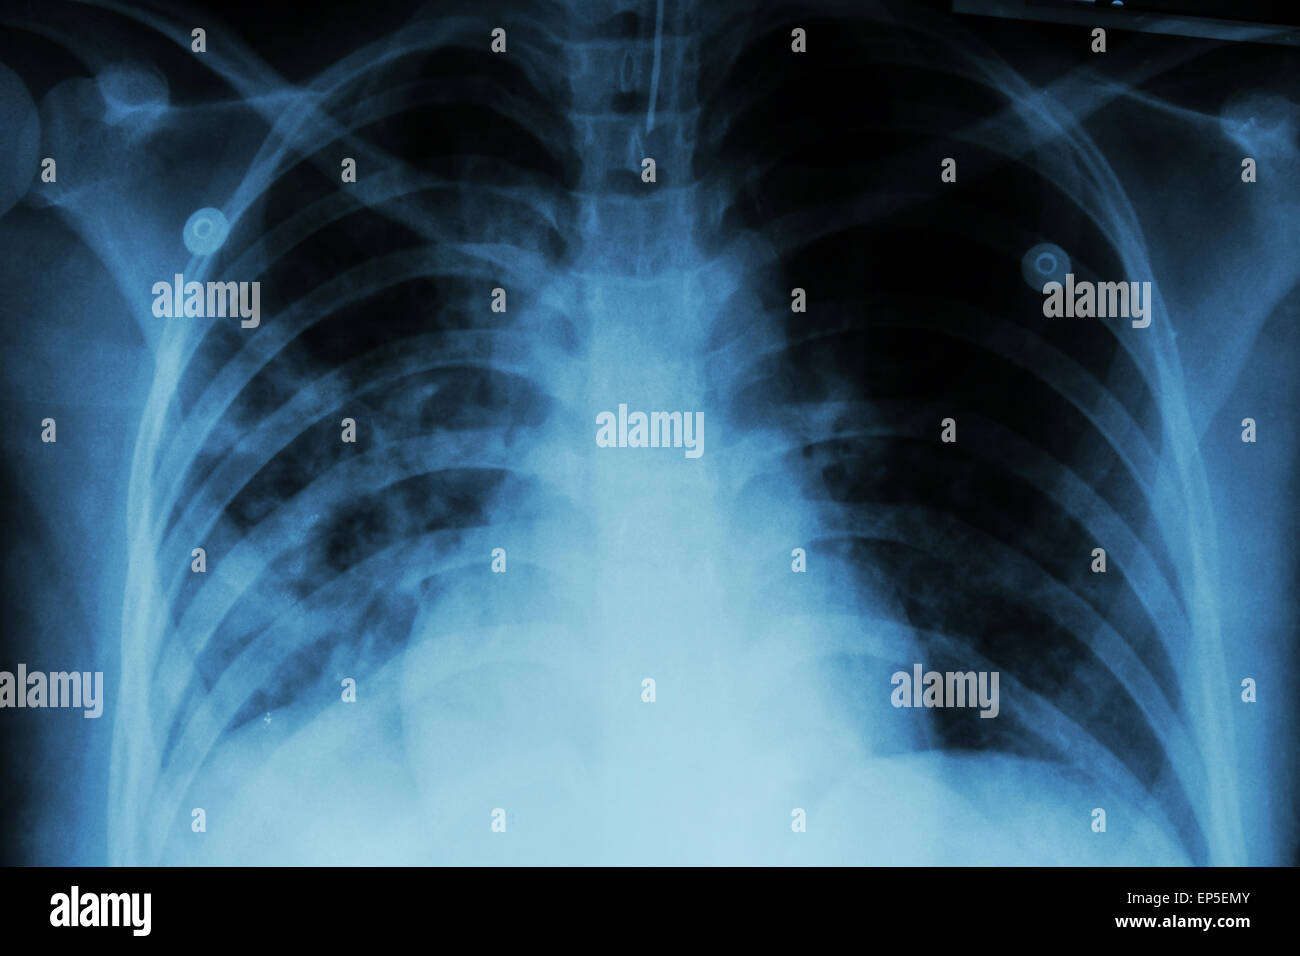 La tubercolosi polmonare ( TB ) : i raggi x al torace mostra infiltrazione alveolare in corrispondenza di entrambi i polmoni a causa di mycobacterium tuberculosis infectio Foto Stock